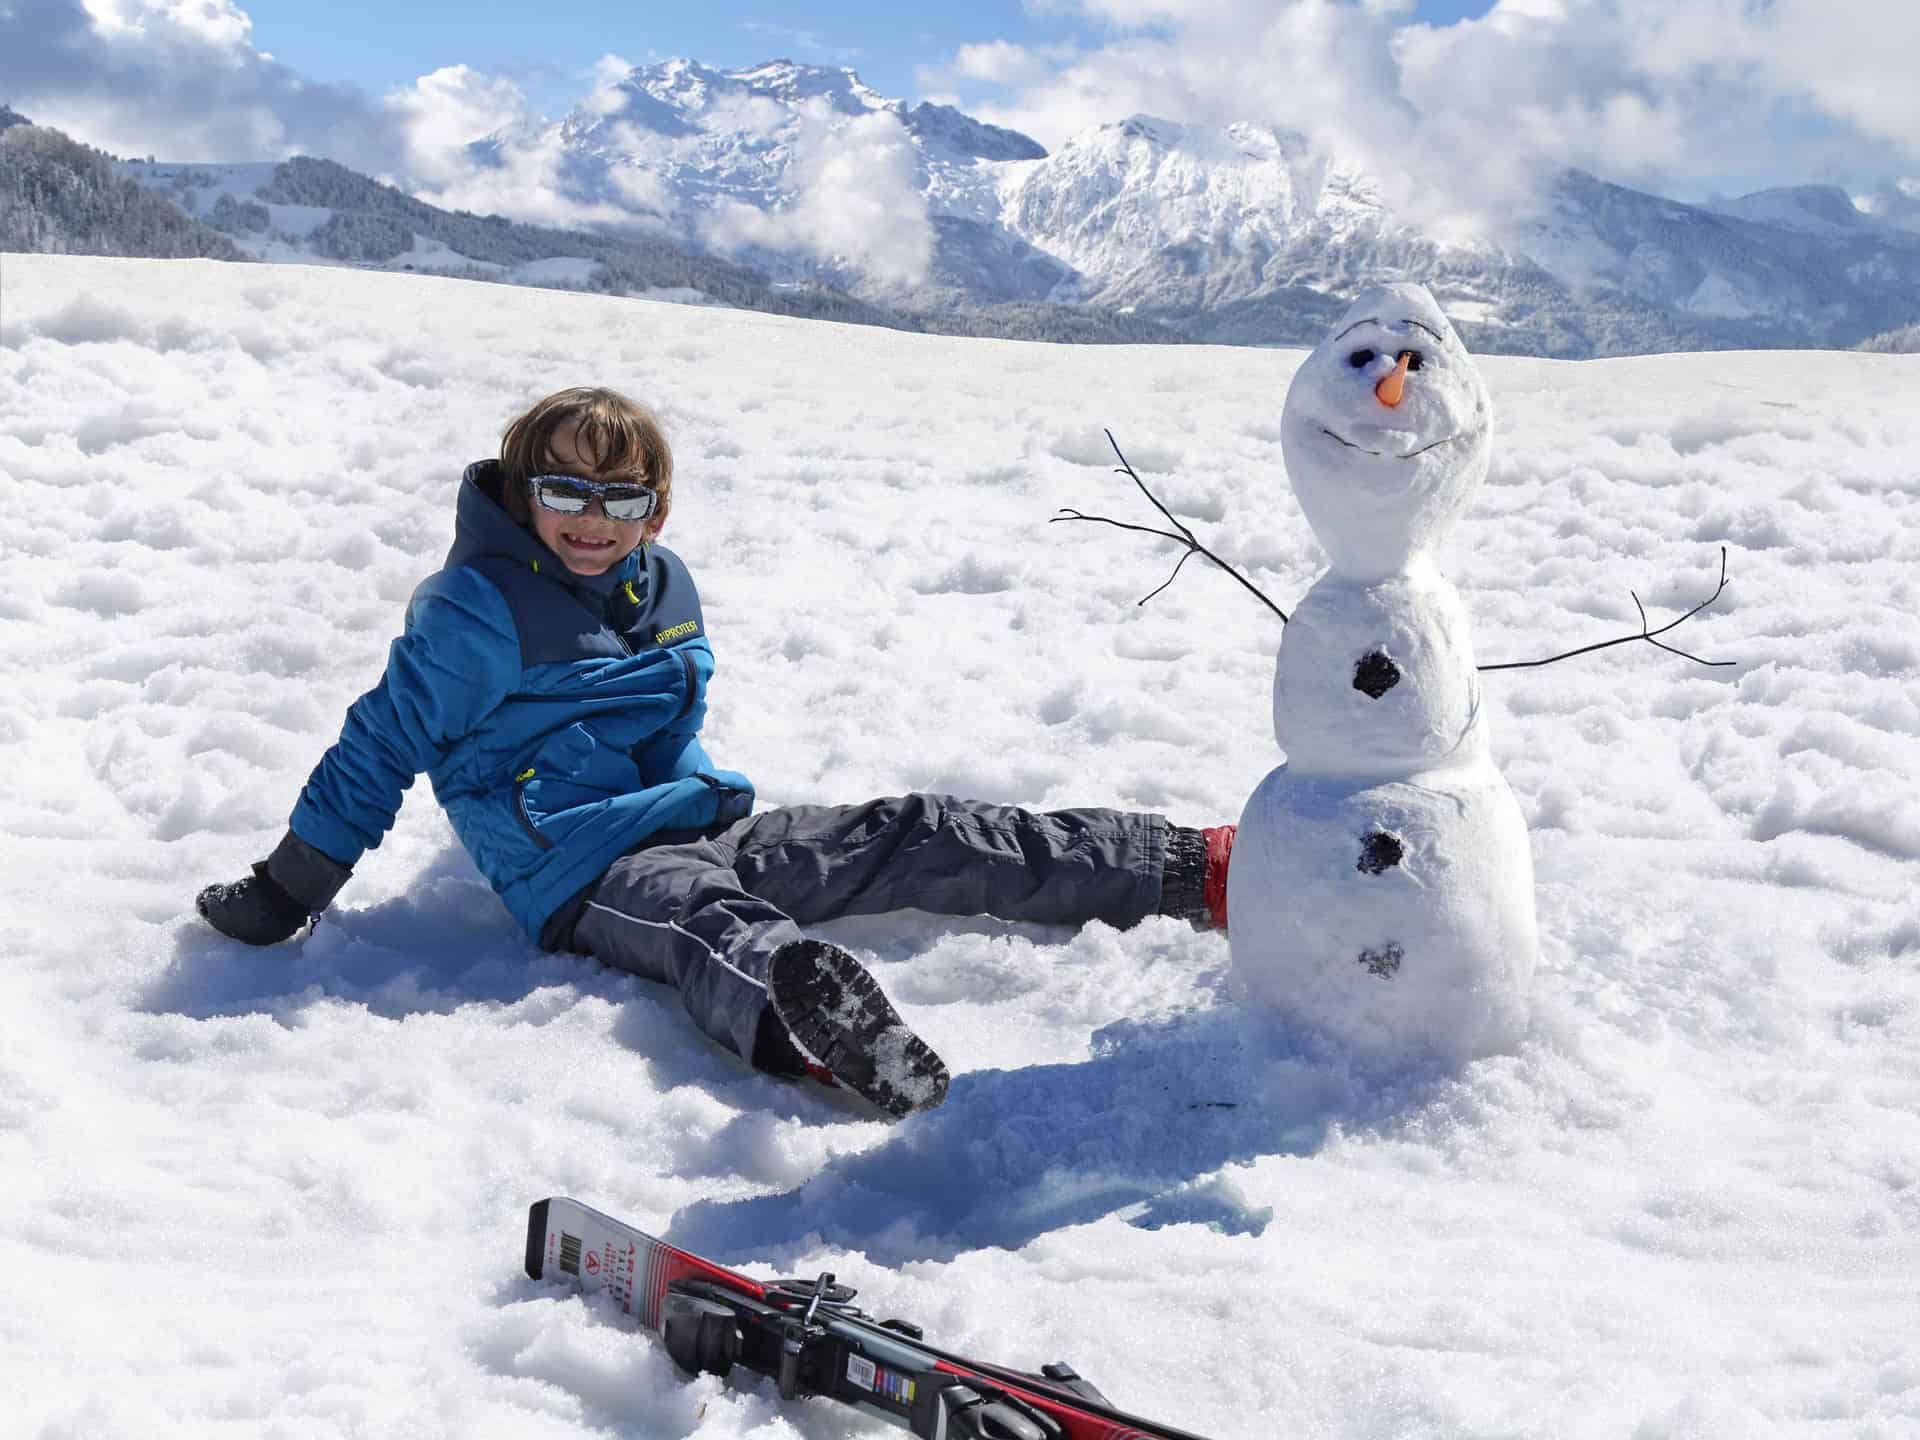 Winter activities: Build a snowman